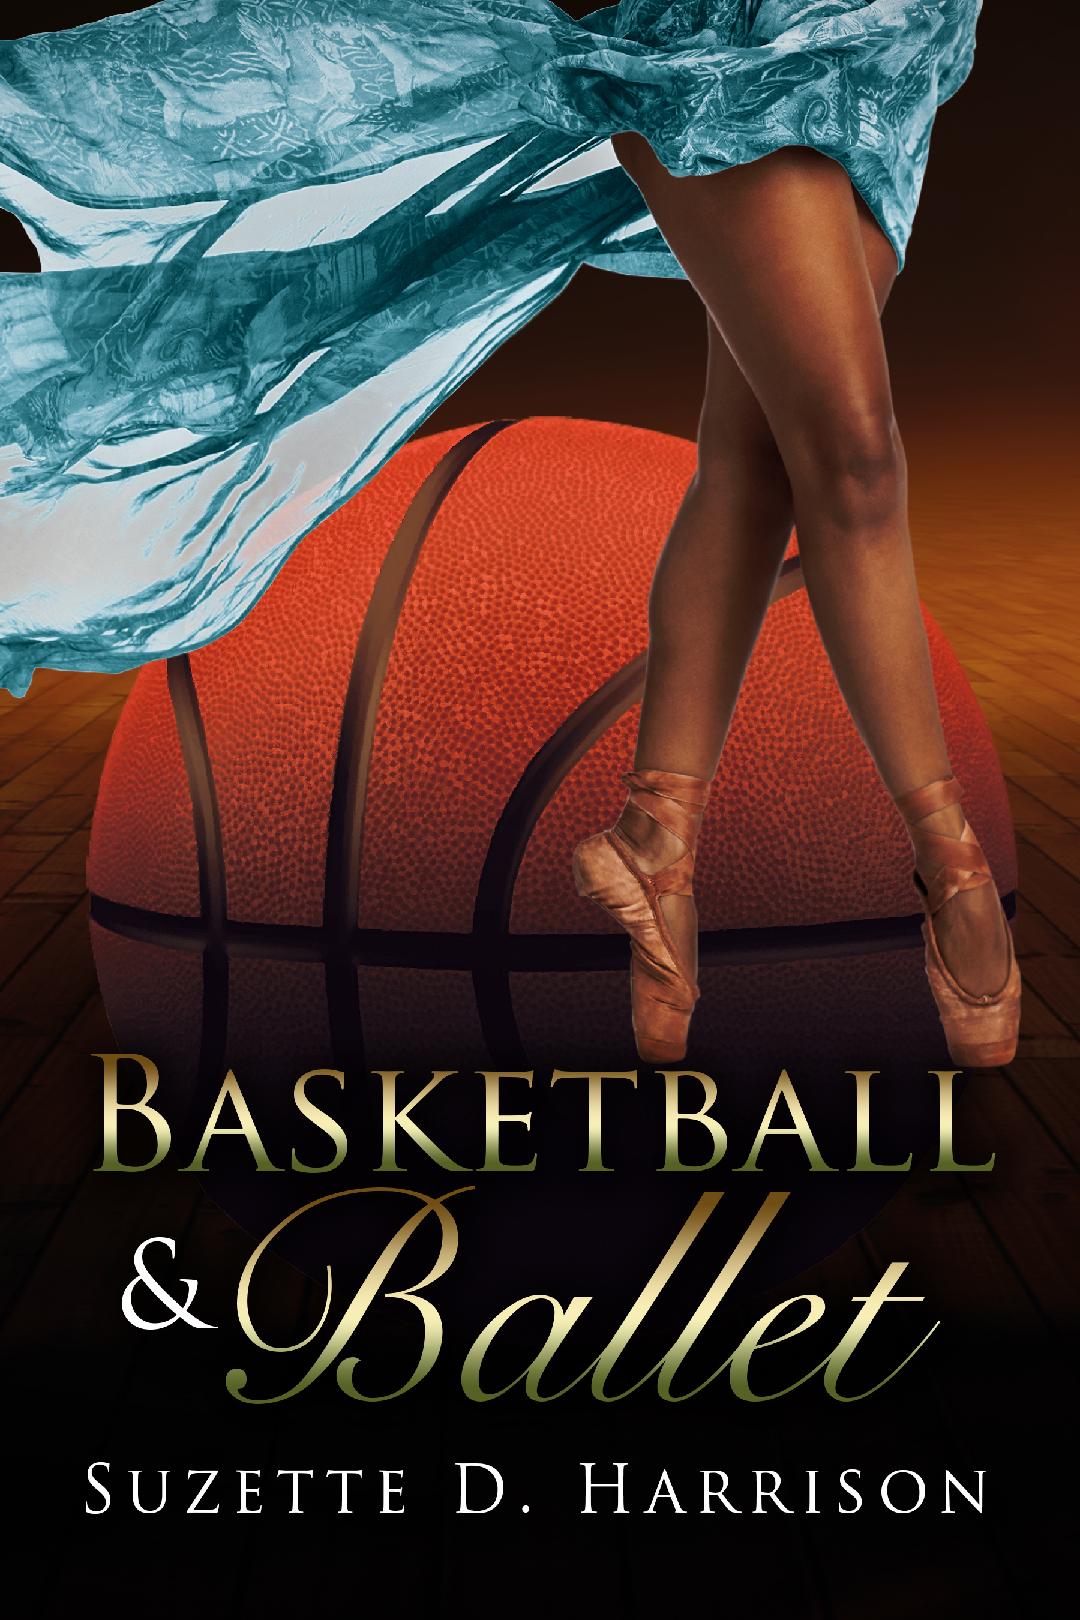 BasketbalandBalletnailerere